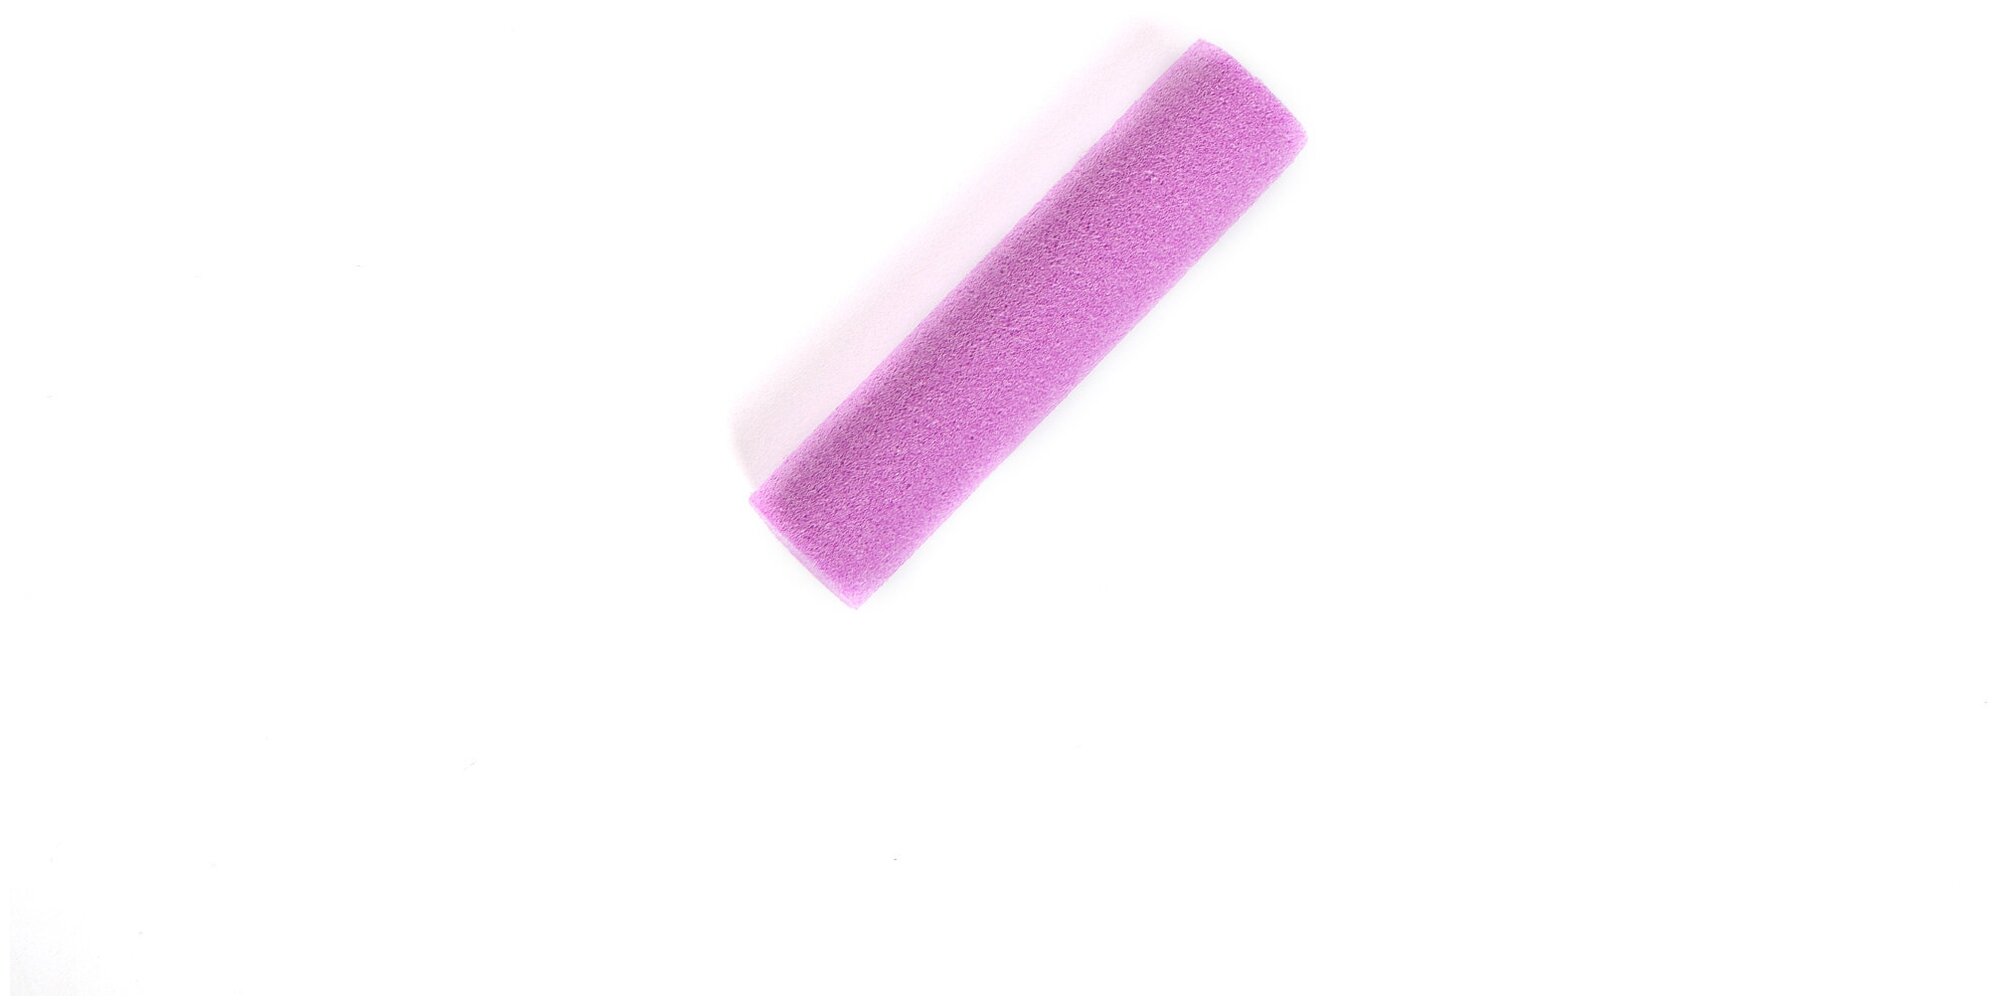 Пенки для оснастки зиг риг Carptoday Tackle Foam Sticks фиолетовые